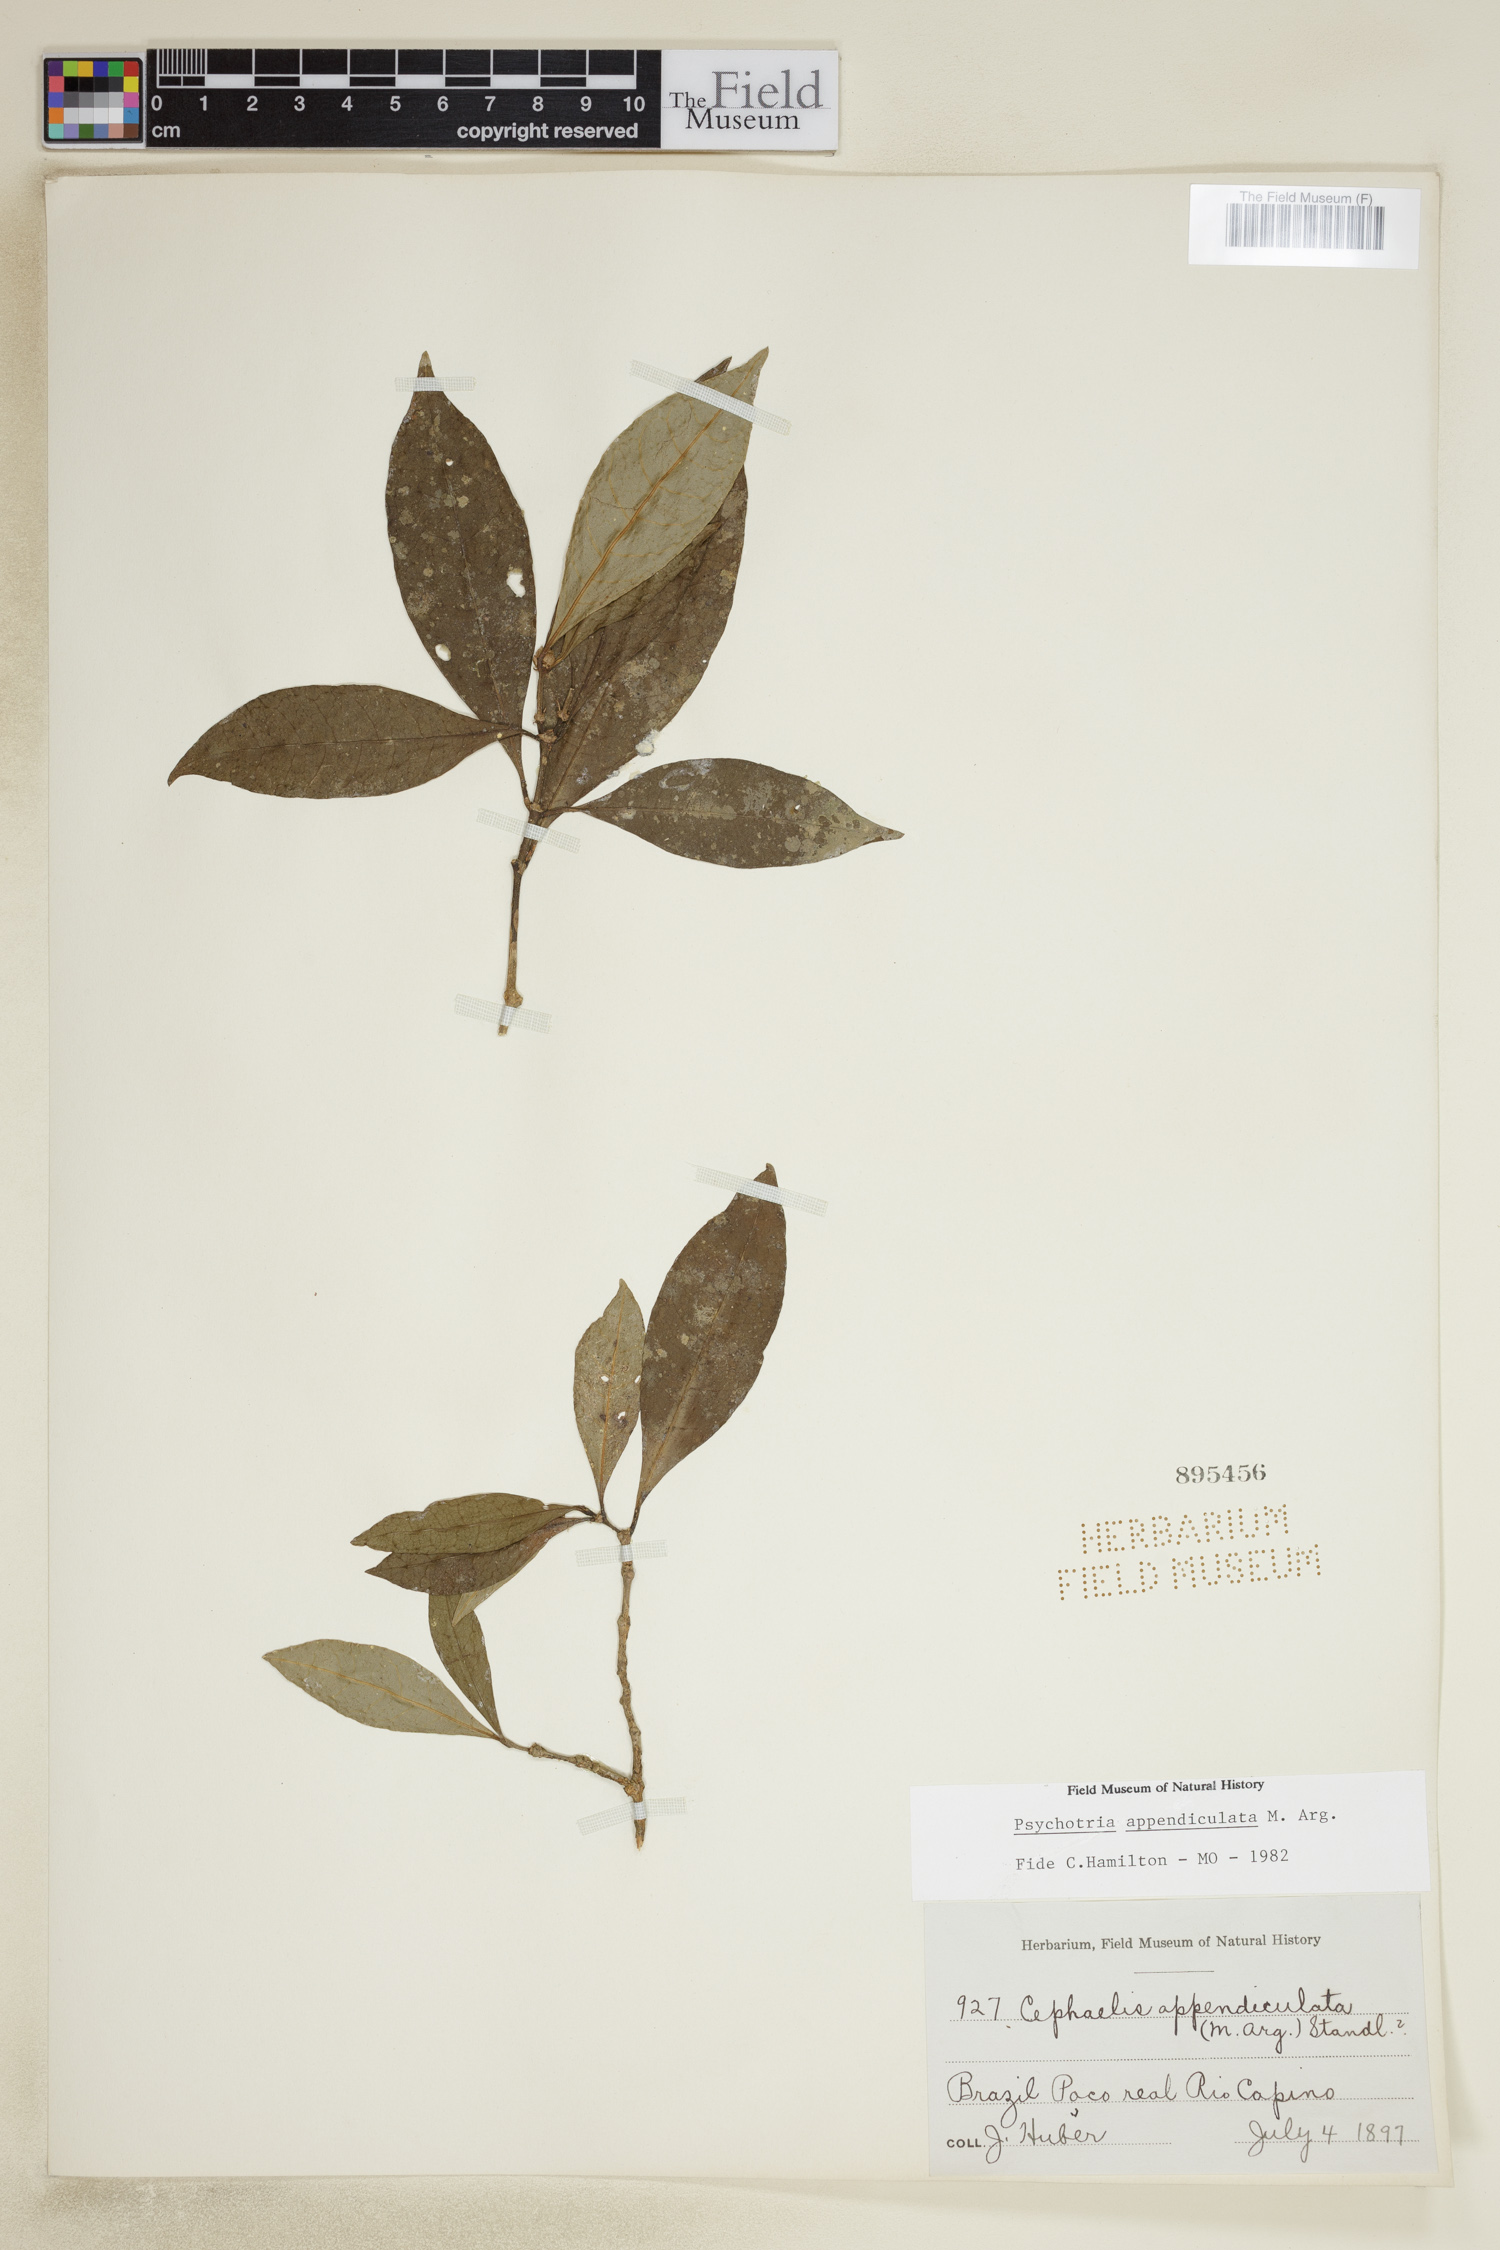 Psychotria appendiculata image